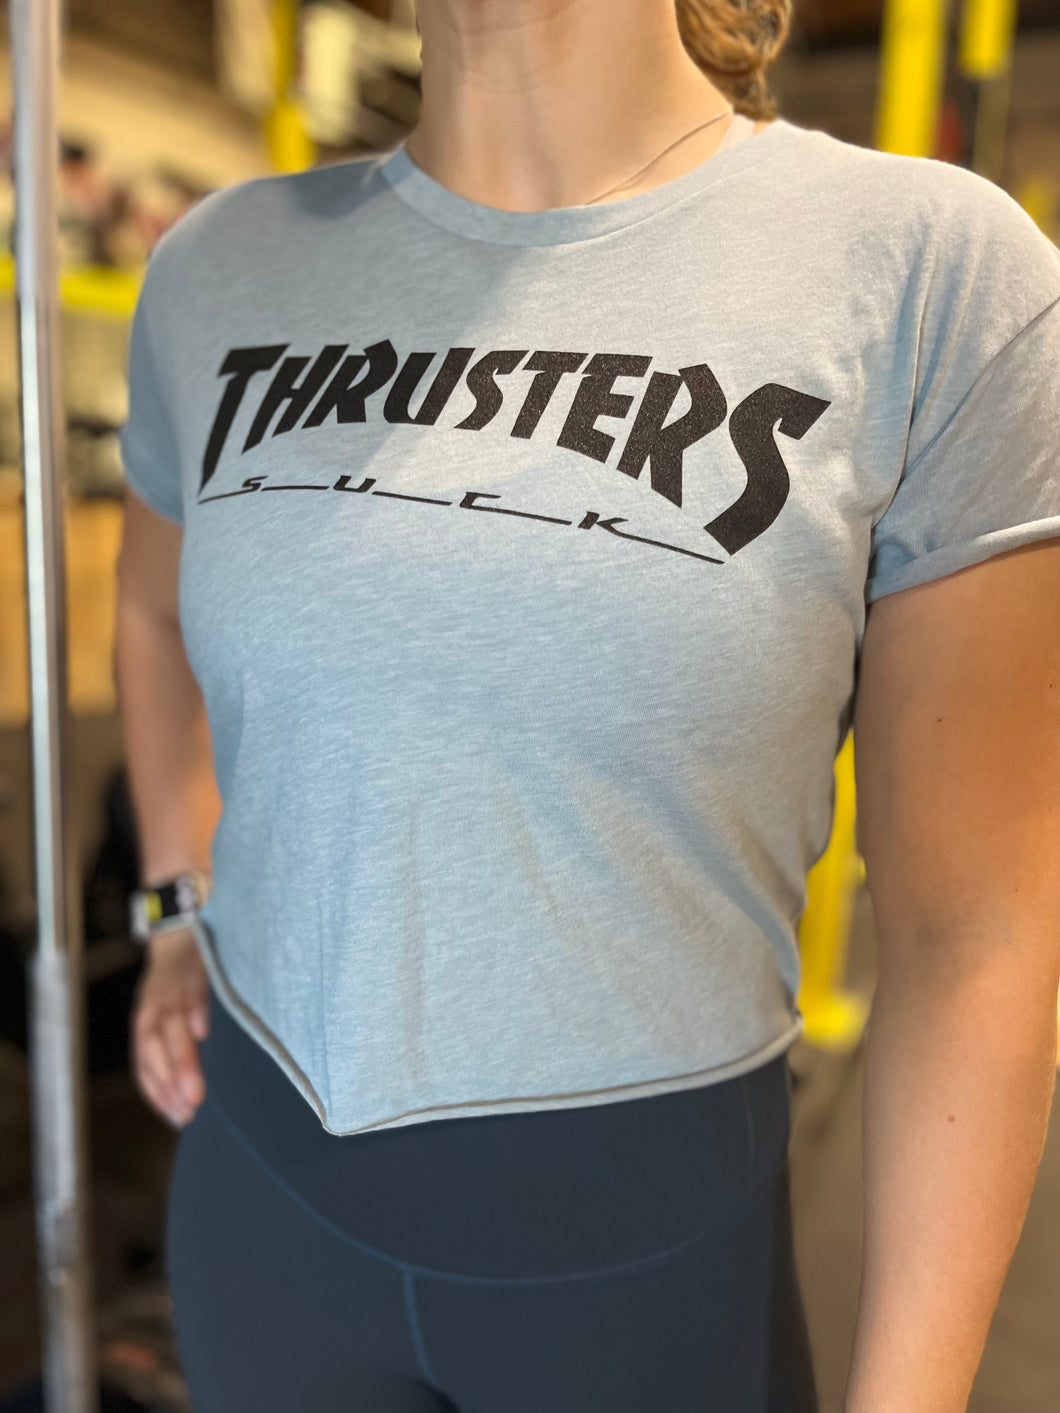 Thrusters Suck - Crop tee